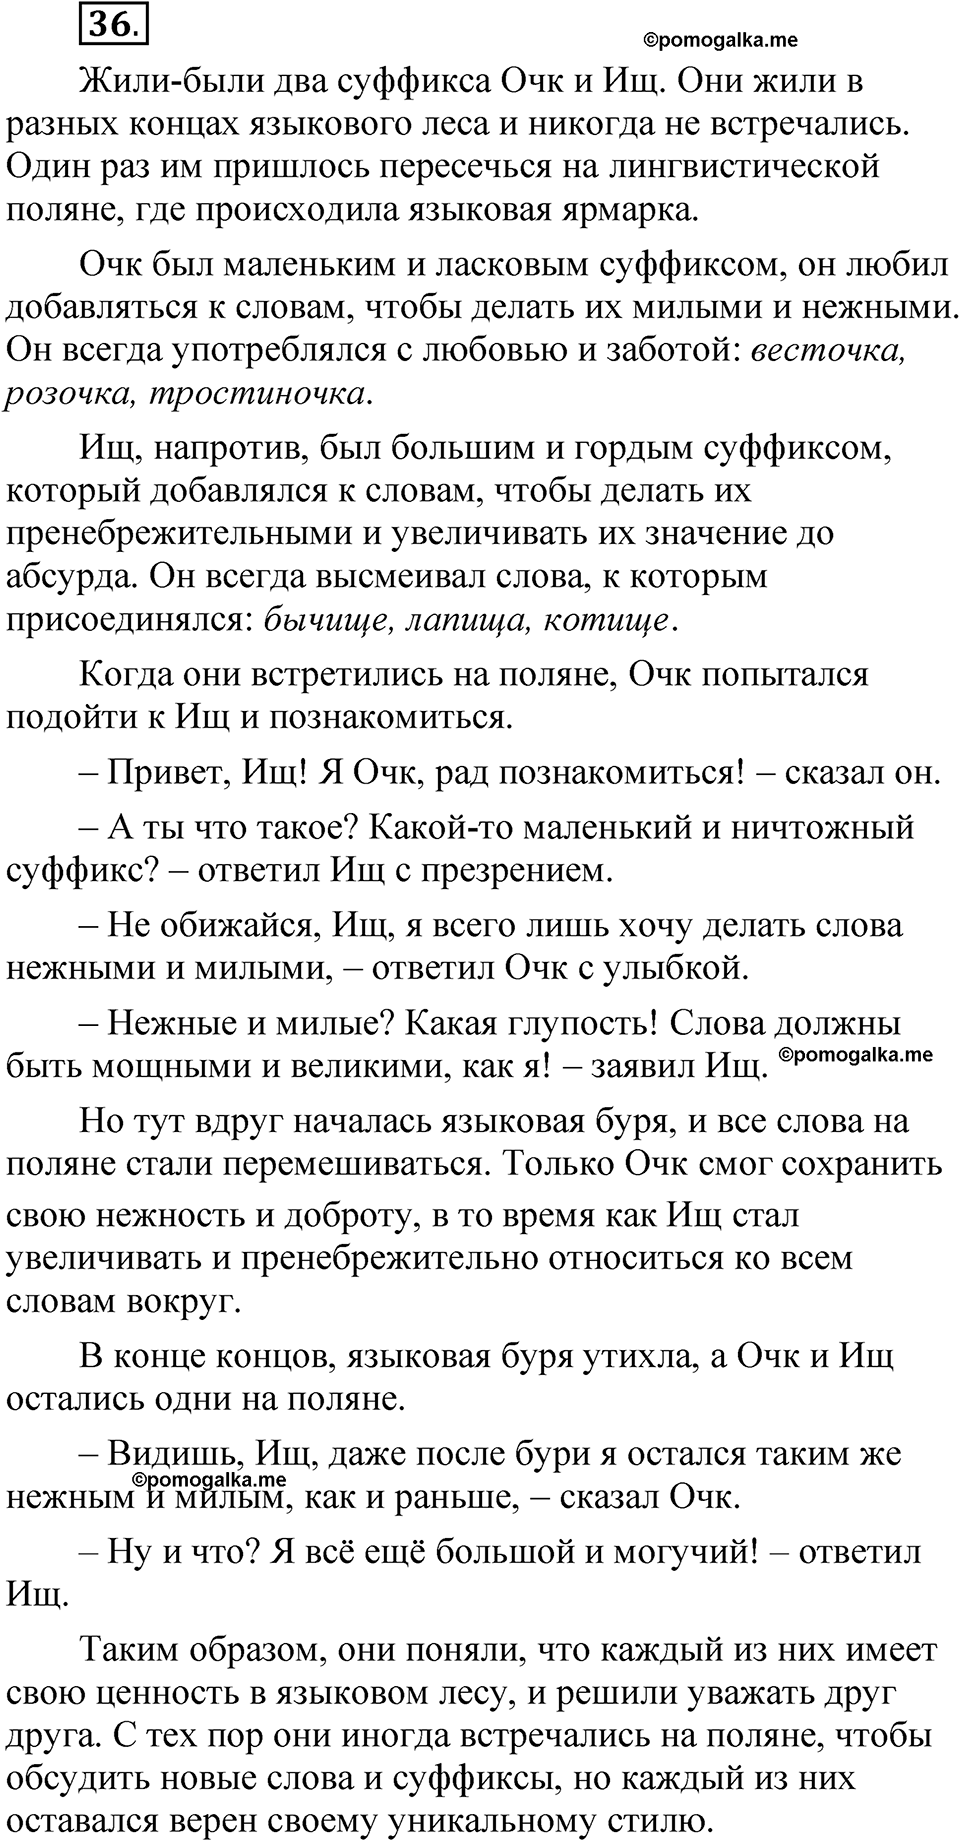 страница 25 упражнение 36 русский язык 5 класс Быстрова, Кибирева 2 часть 2021 год